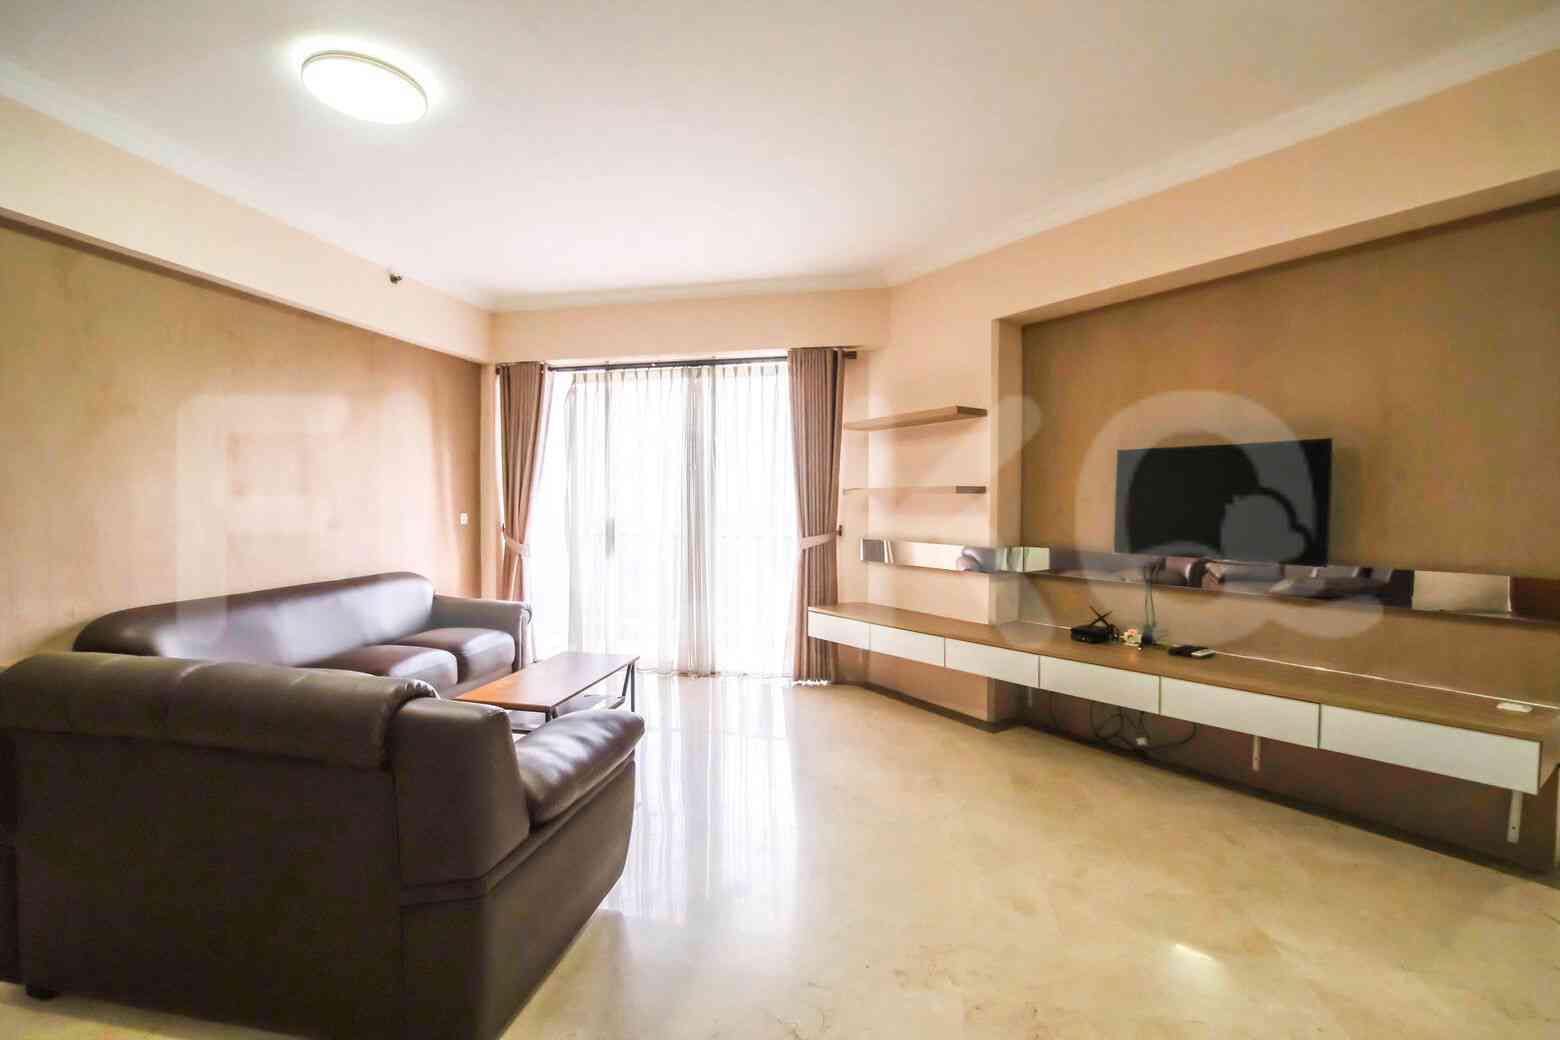 2 Bedroom on 21st Floor for Rent in Puri Casablanca - fte68b 2